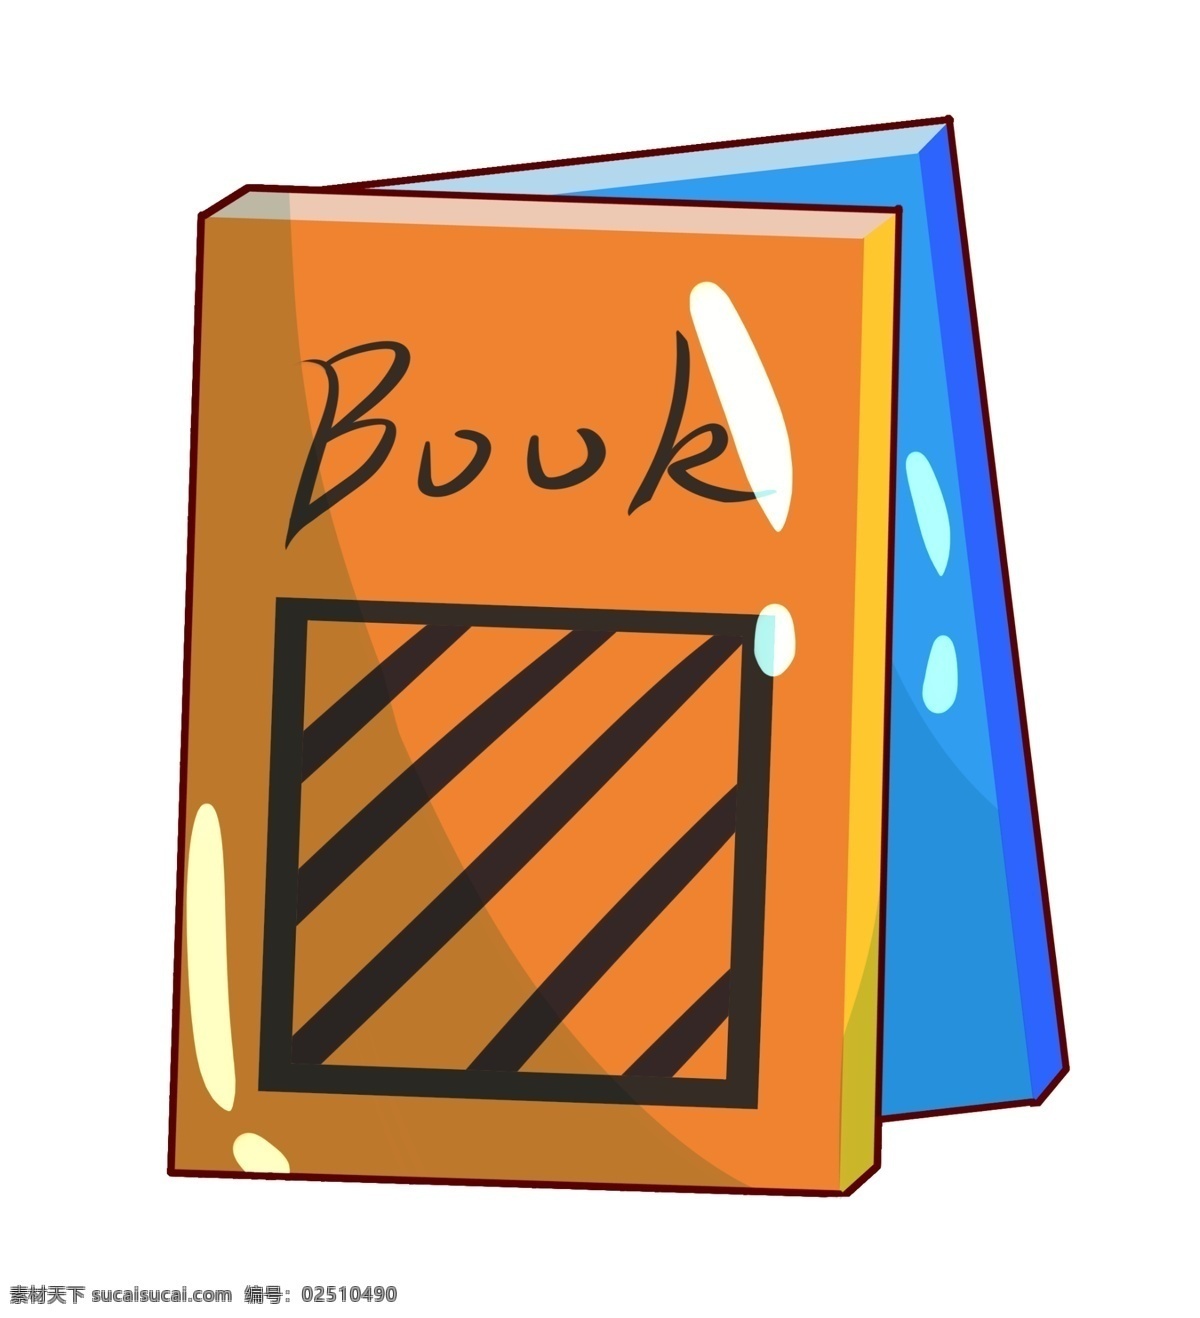 笔记本 本子 装饰 插画 精美的笔记本 黄色的本子 蓝色的本子 学习用品 办公用品 记录笔记 卡通本子插画